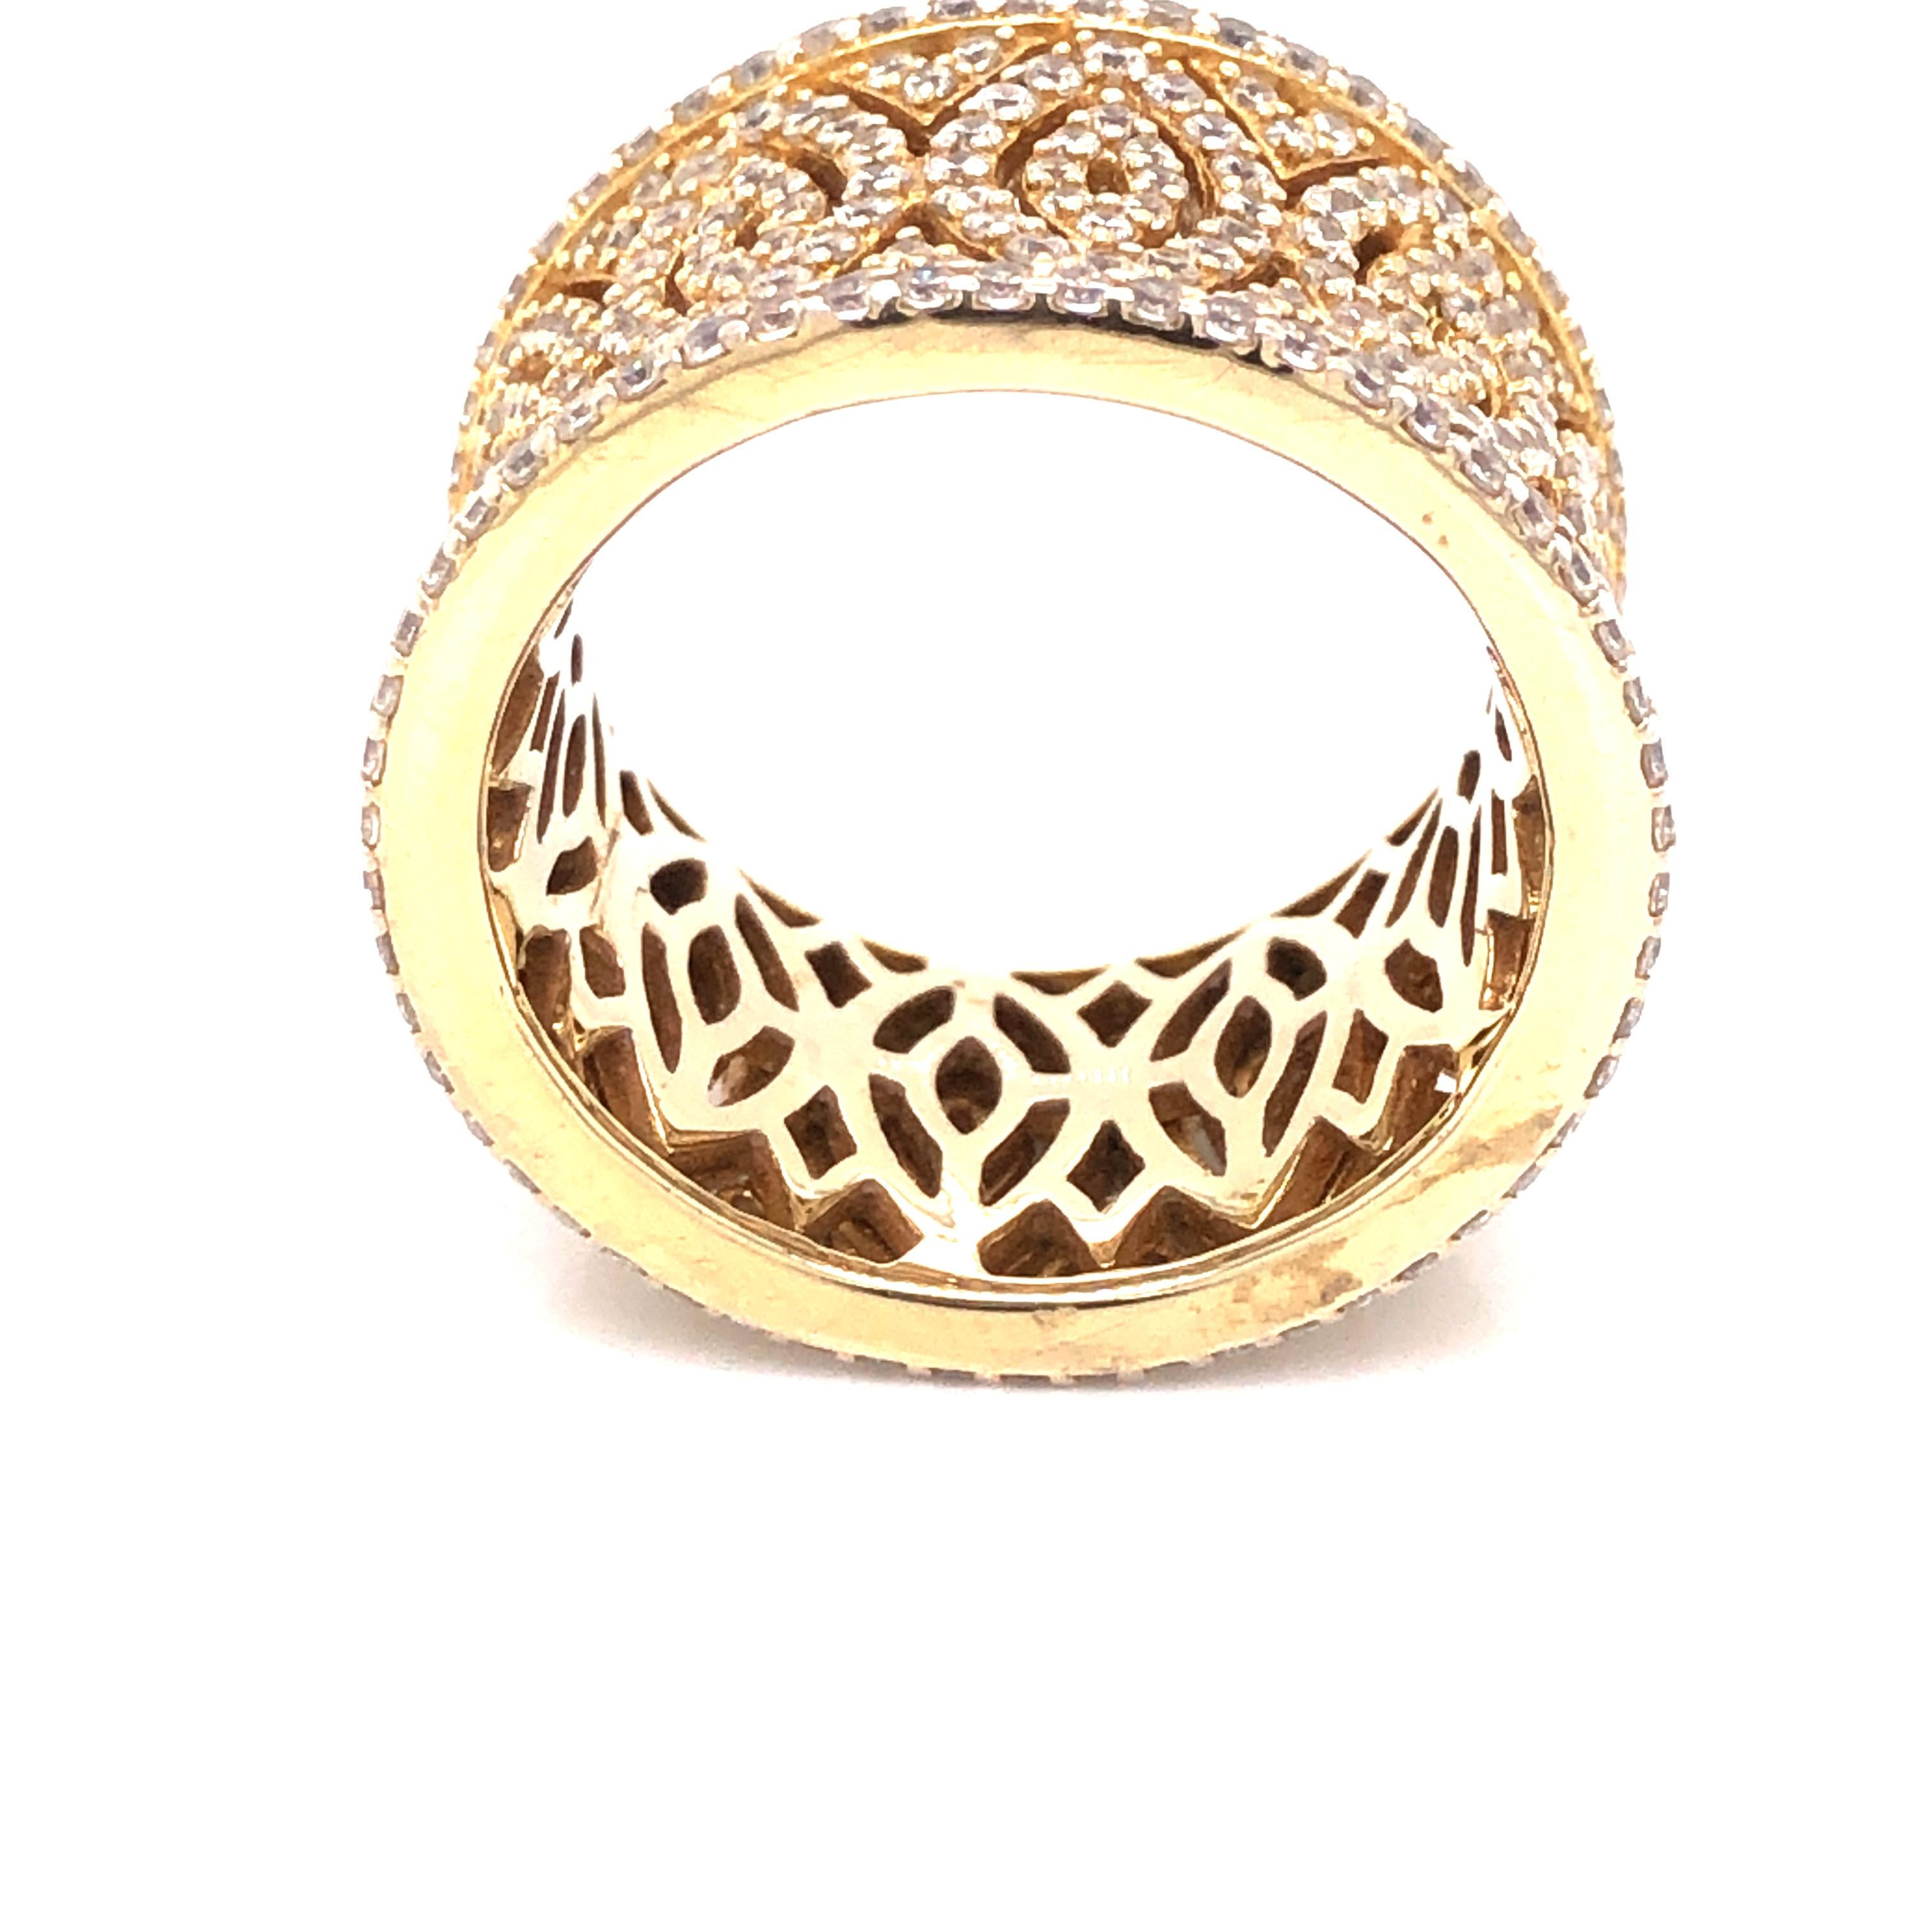 Mit seiner Mischung aus Weiblichkeit und modernem Design ist dieser filigrane Ring prächtig und aufregend. 

Mit 3,40 Karat runden Zirkonen im Brillantschliff, die in Pflaster gefasst sind. 

Er besteht aus 925er Sterlingsilber und ist entweder mit